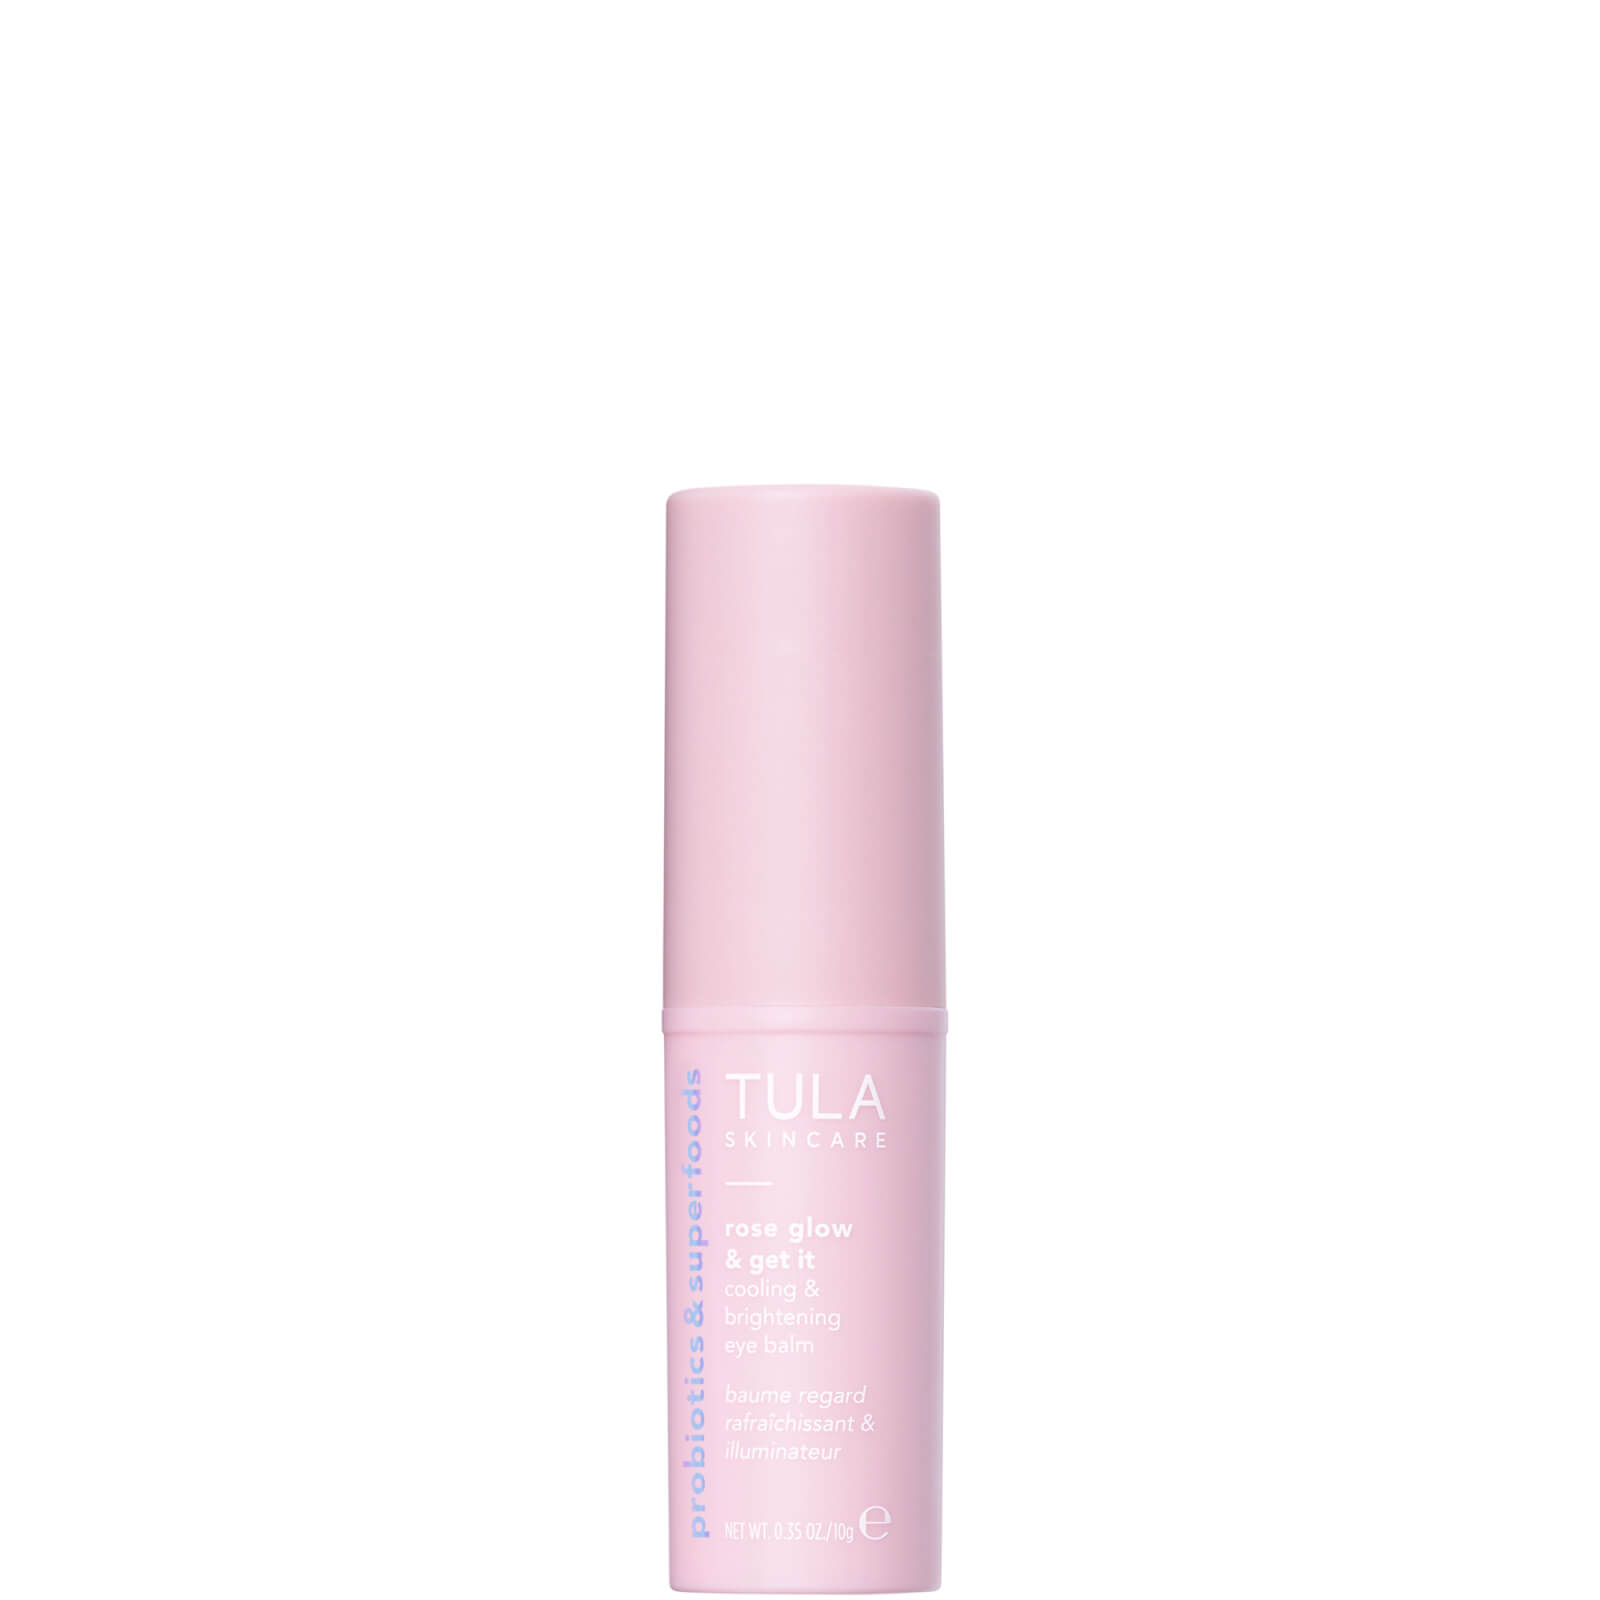 Tula Skincare Rose Glow Get It Cooling Brightening Eye Balm 0.35 Oz. In White